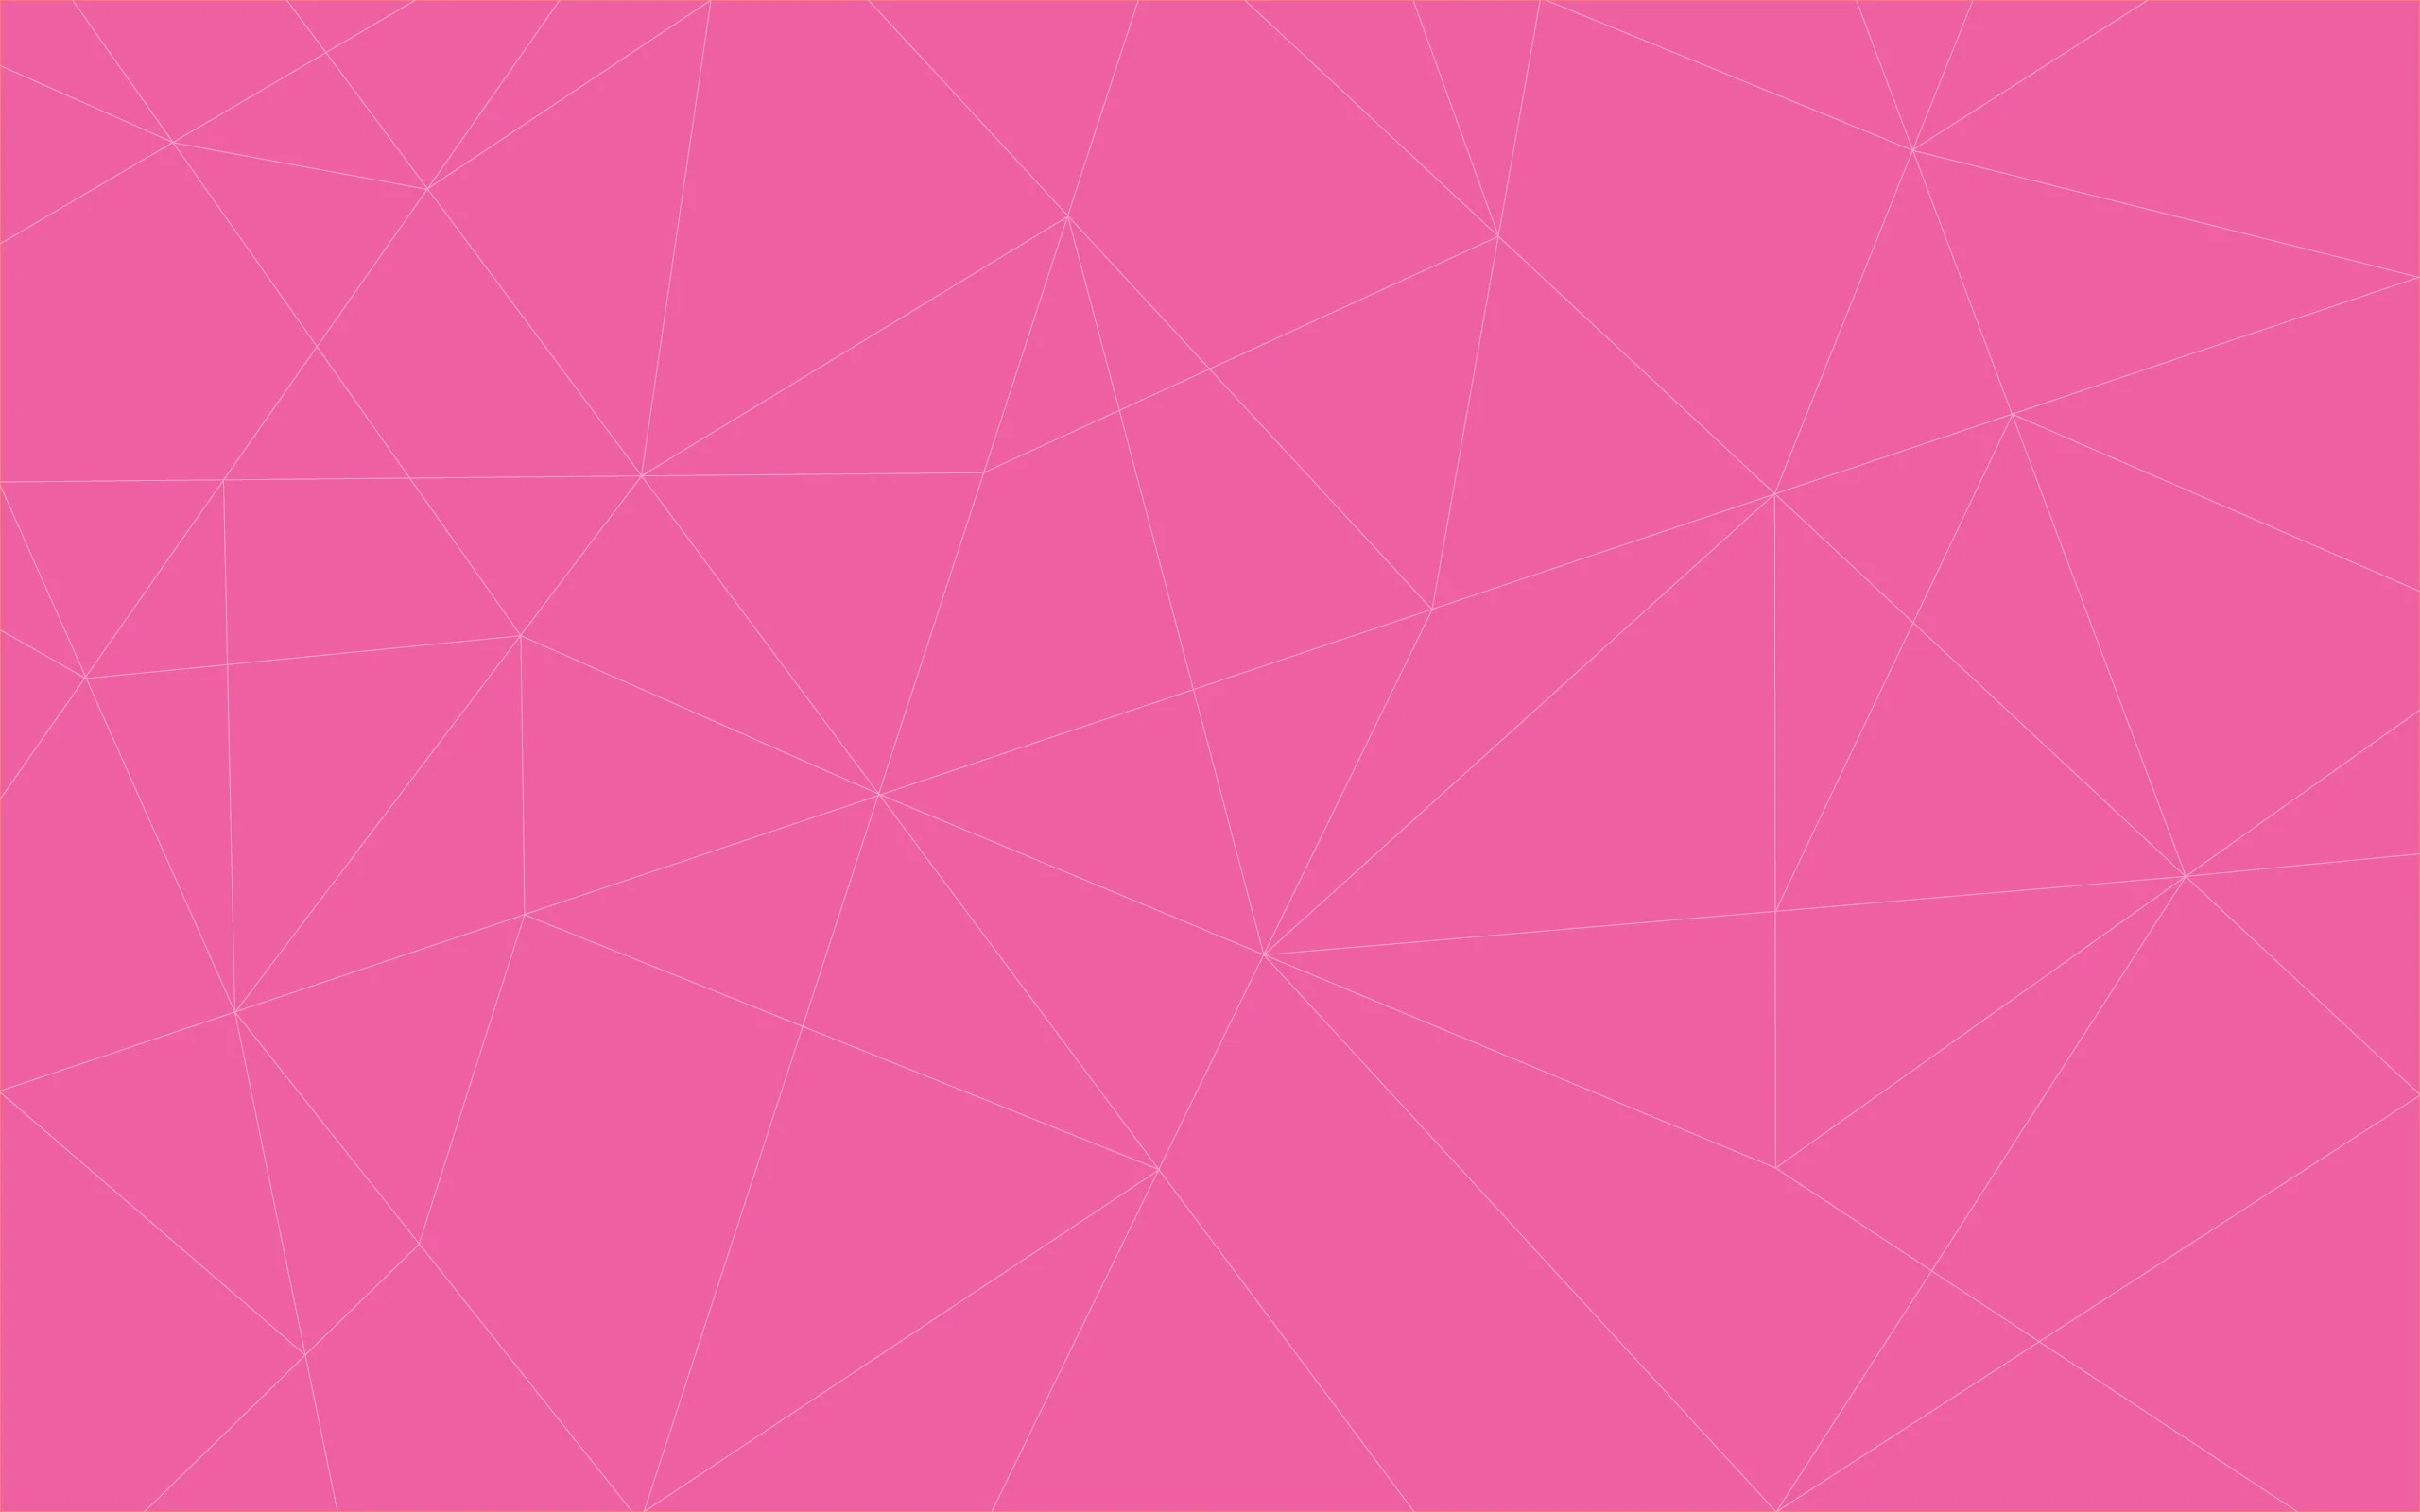 Hình nền màu hồng đẹp sẽ khiến cho thiết kế của bạn trở nên thu hút và sang trọng. Bộ sưu tập gồm 7 themes sẽ giúp bạn tìm kiếm những hình nền phù hợp với nhu cầu của mình.